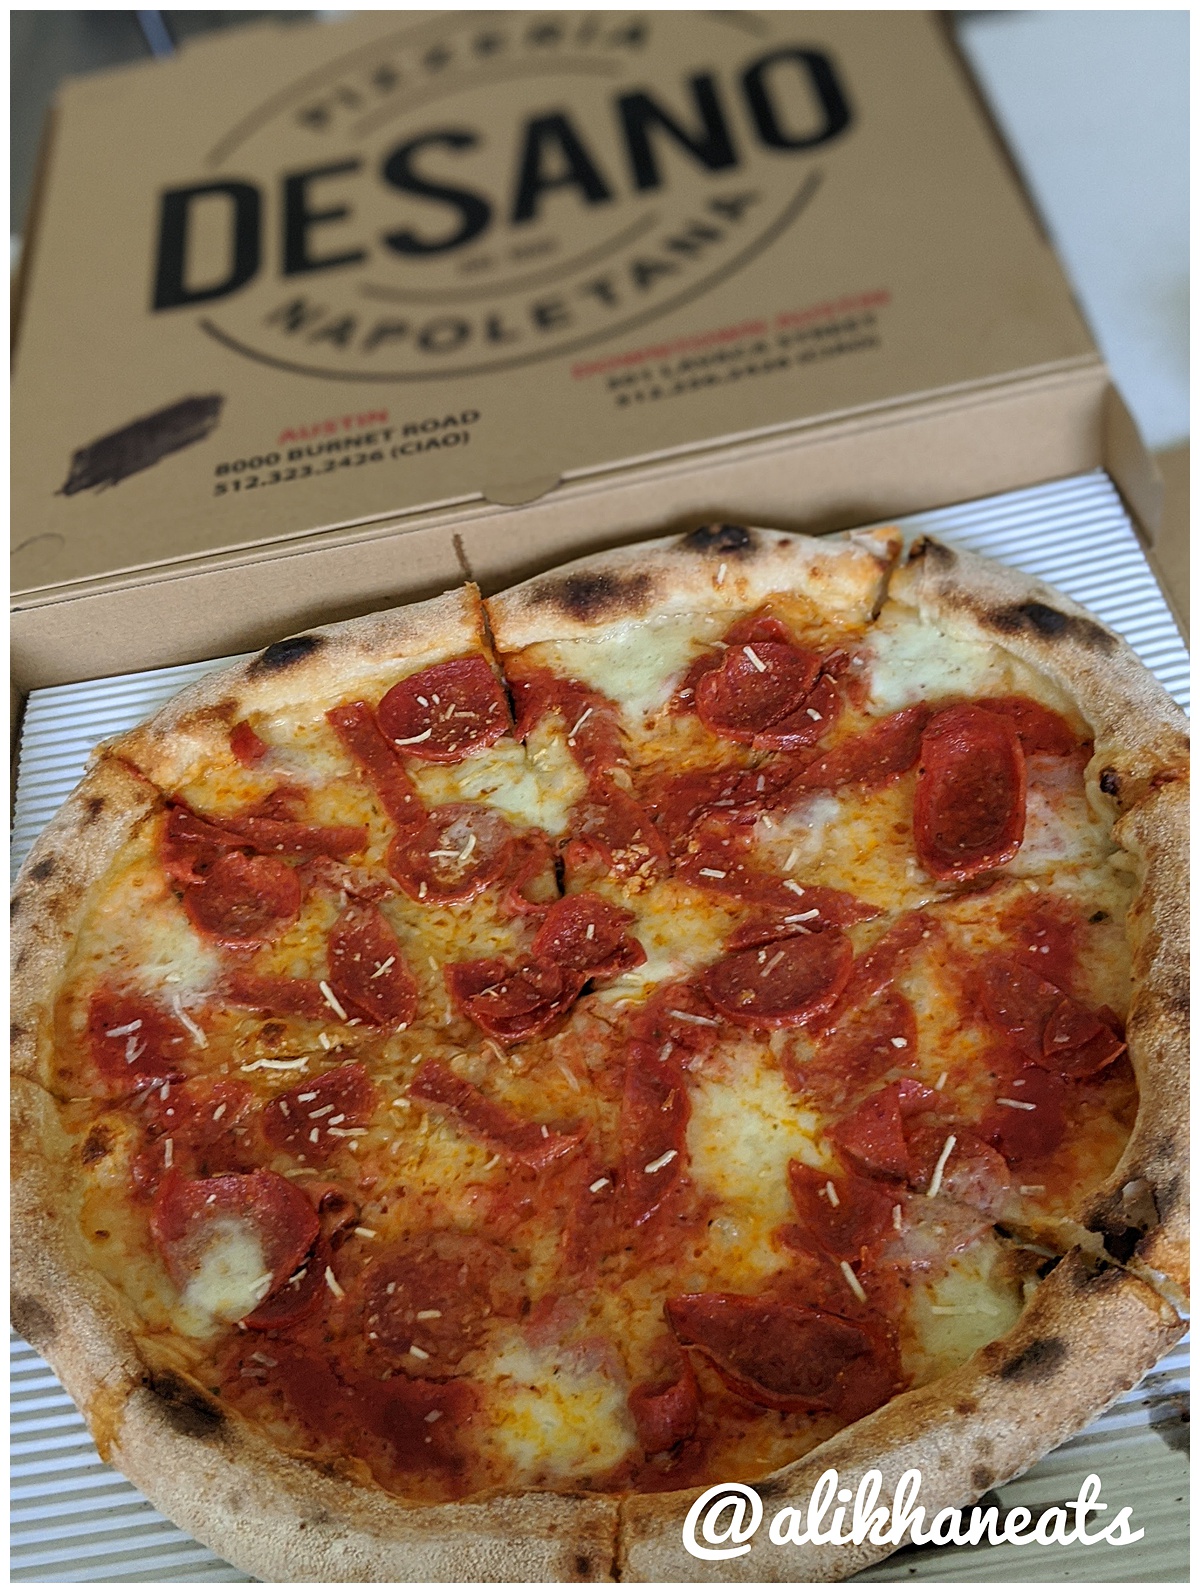 DeSano Diavola Pizza